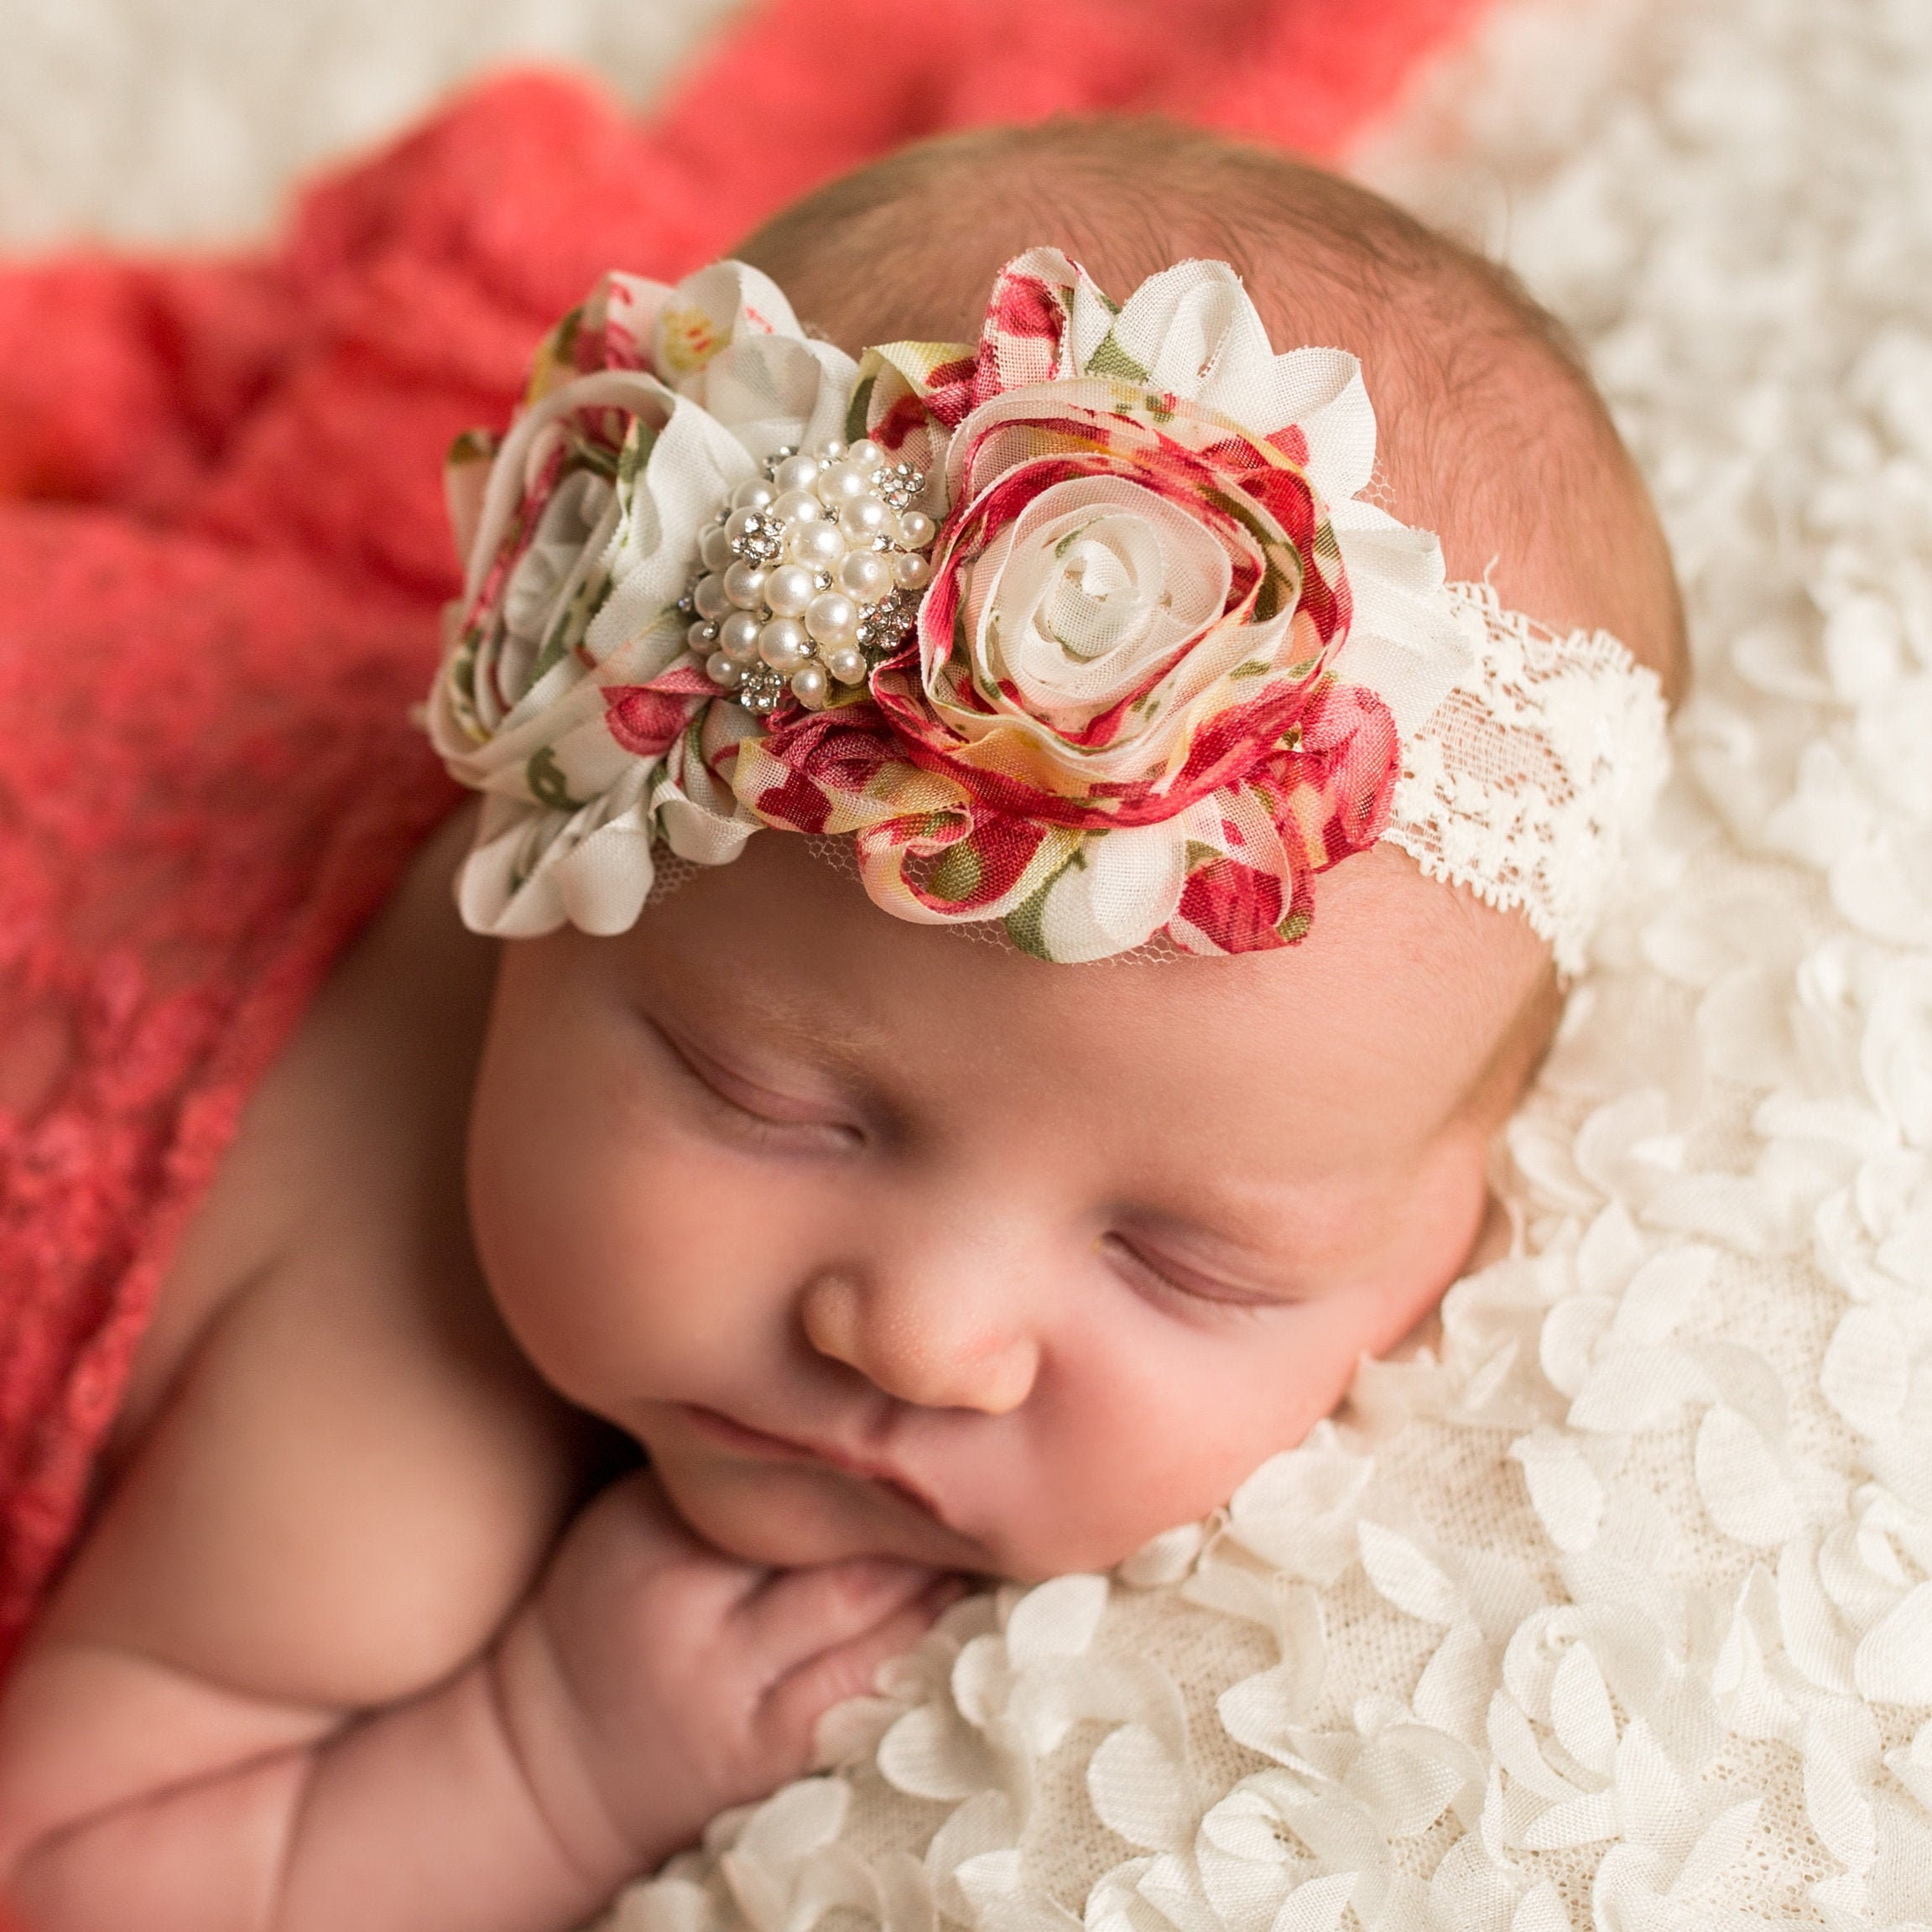 BeautyTop ❤v❤ Baby Mädchen Blumenkranz Haarband Schöne Fotoshooting Stirnband Blüte Prinzessin Haarreife Haarbänder Babyschmuck Babygeschenke Taufe Haarschmuck